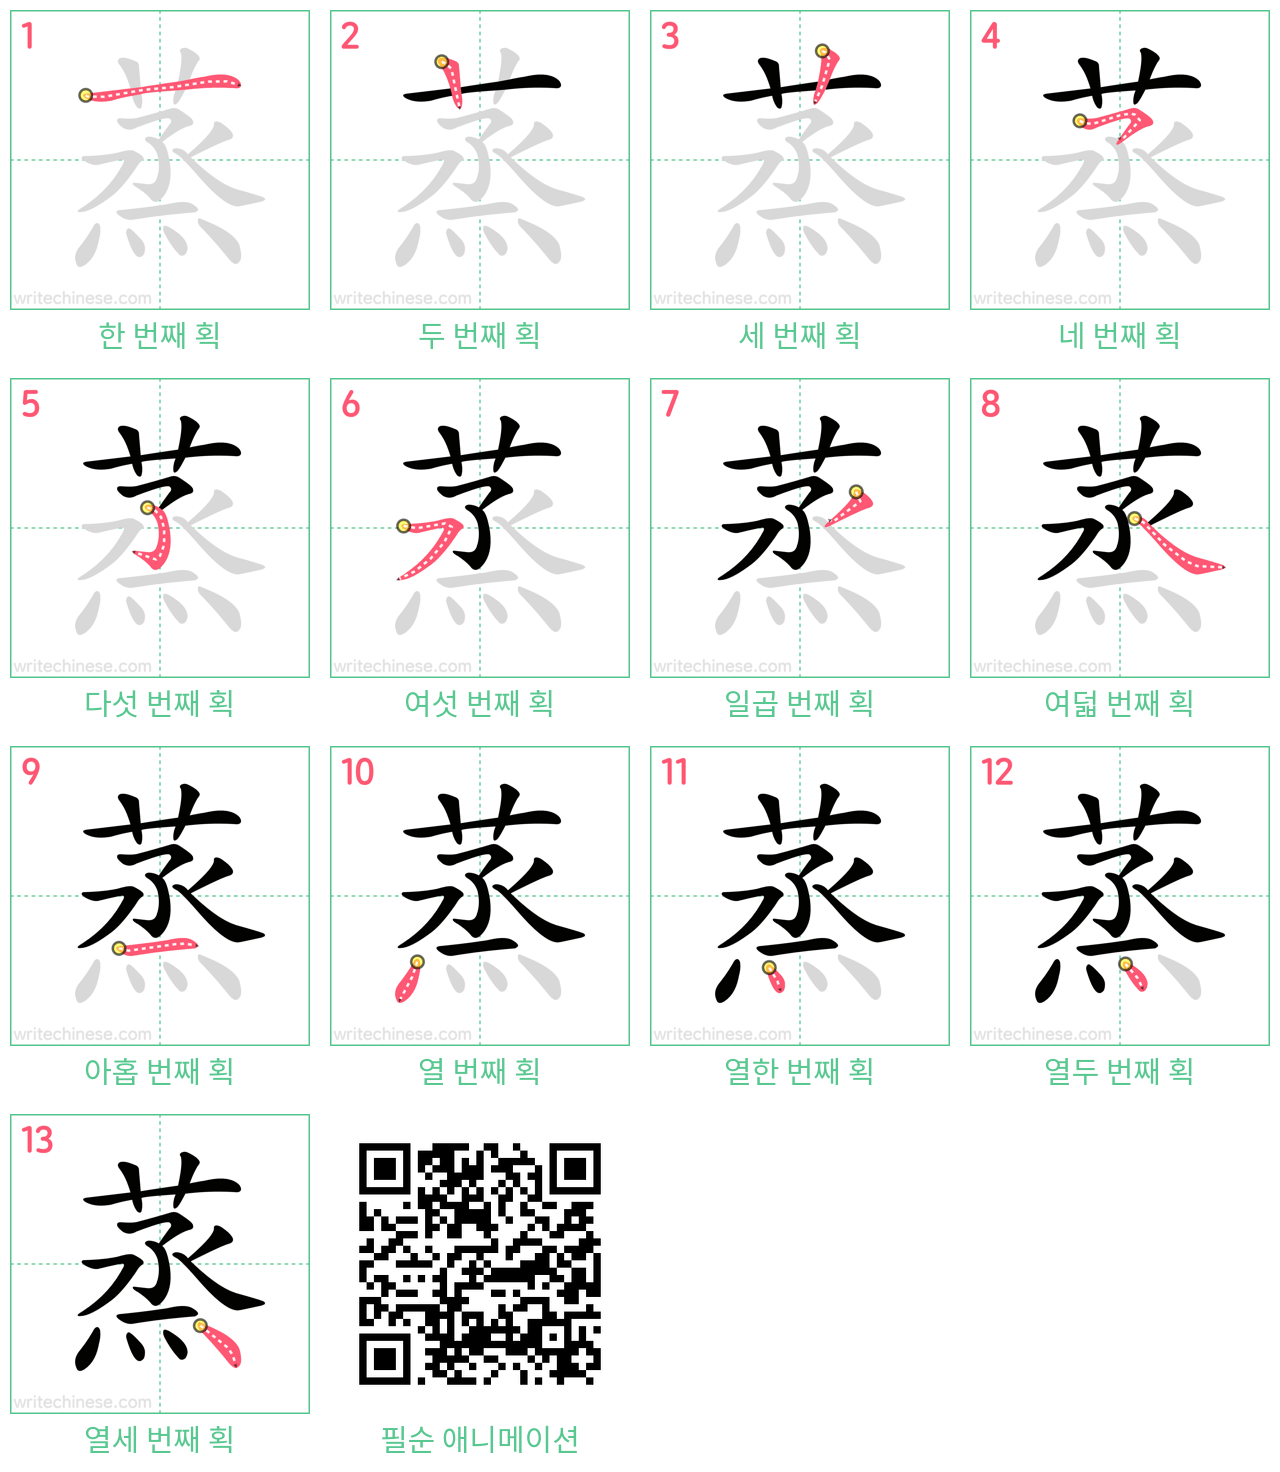 蒸 step-by-step stroke order diagrams